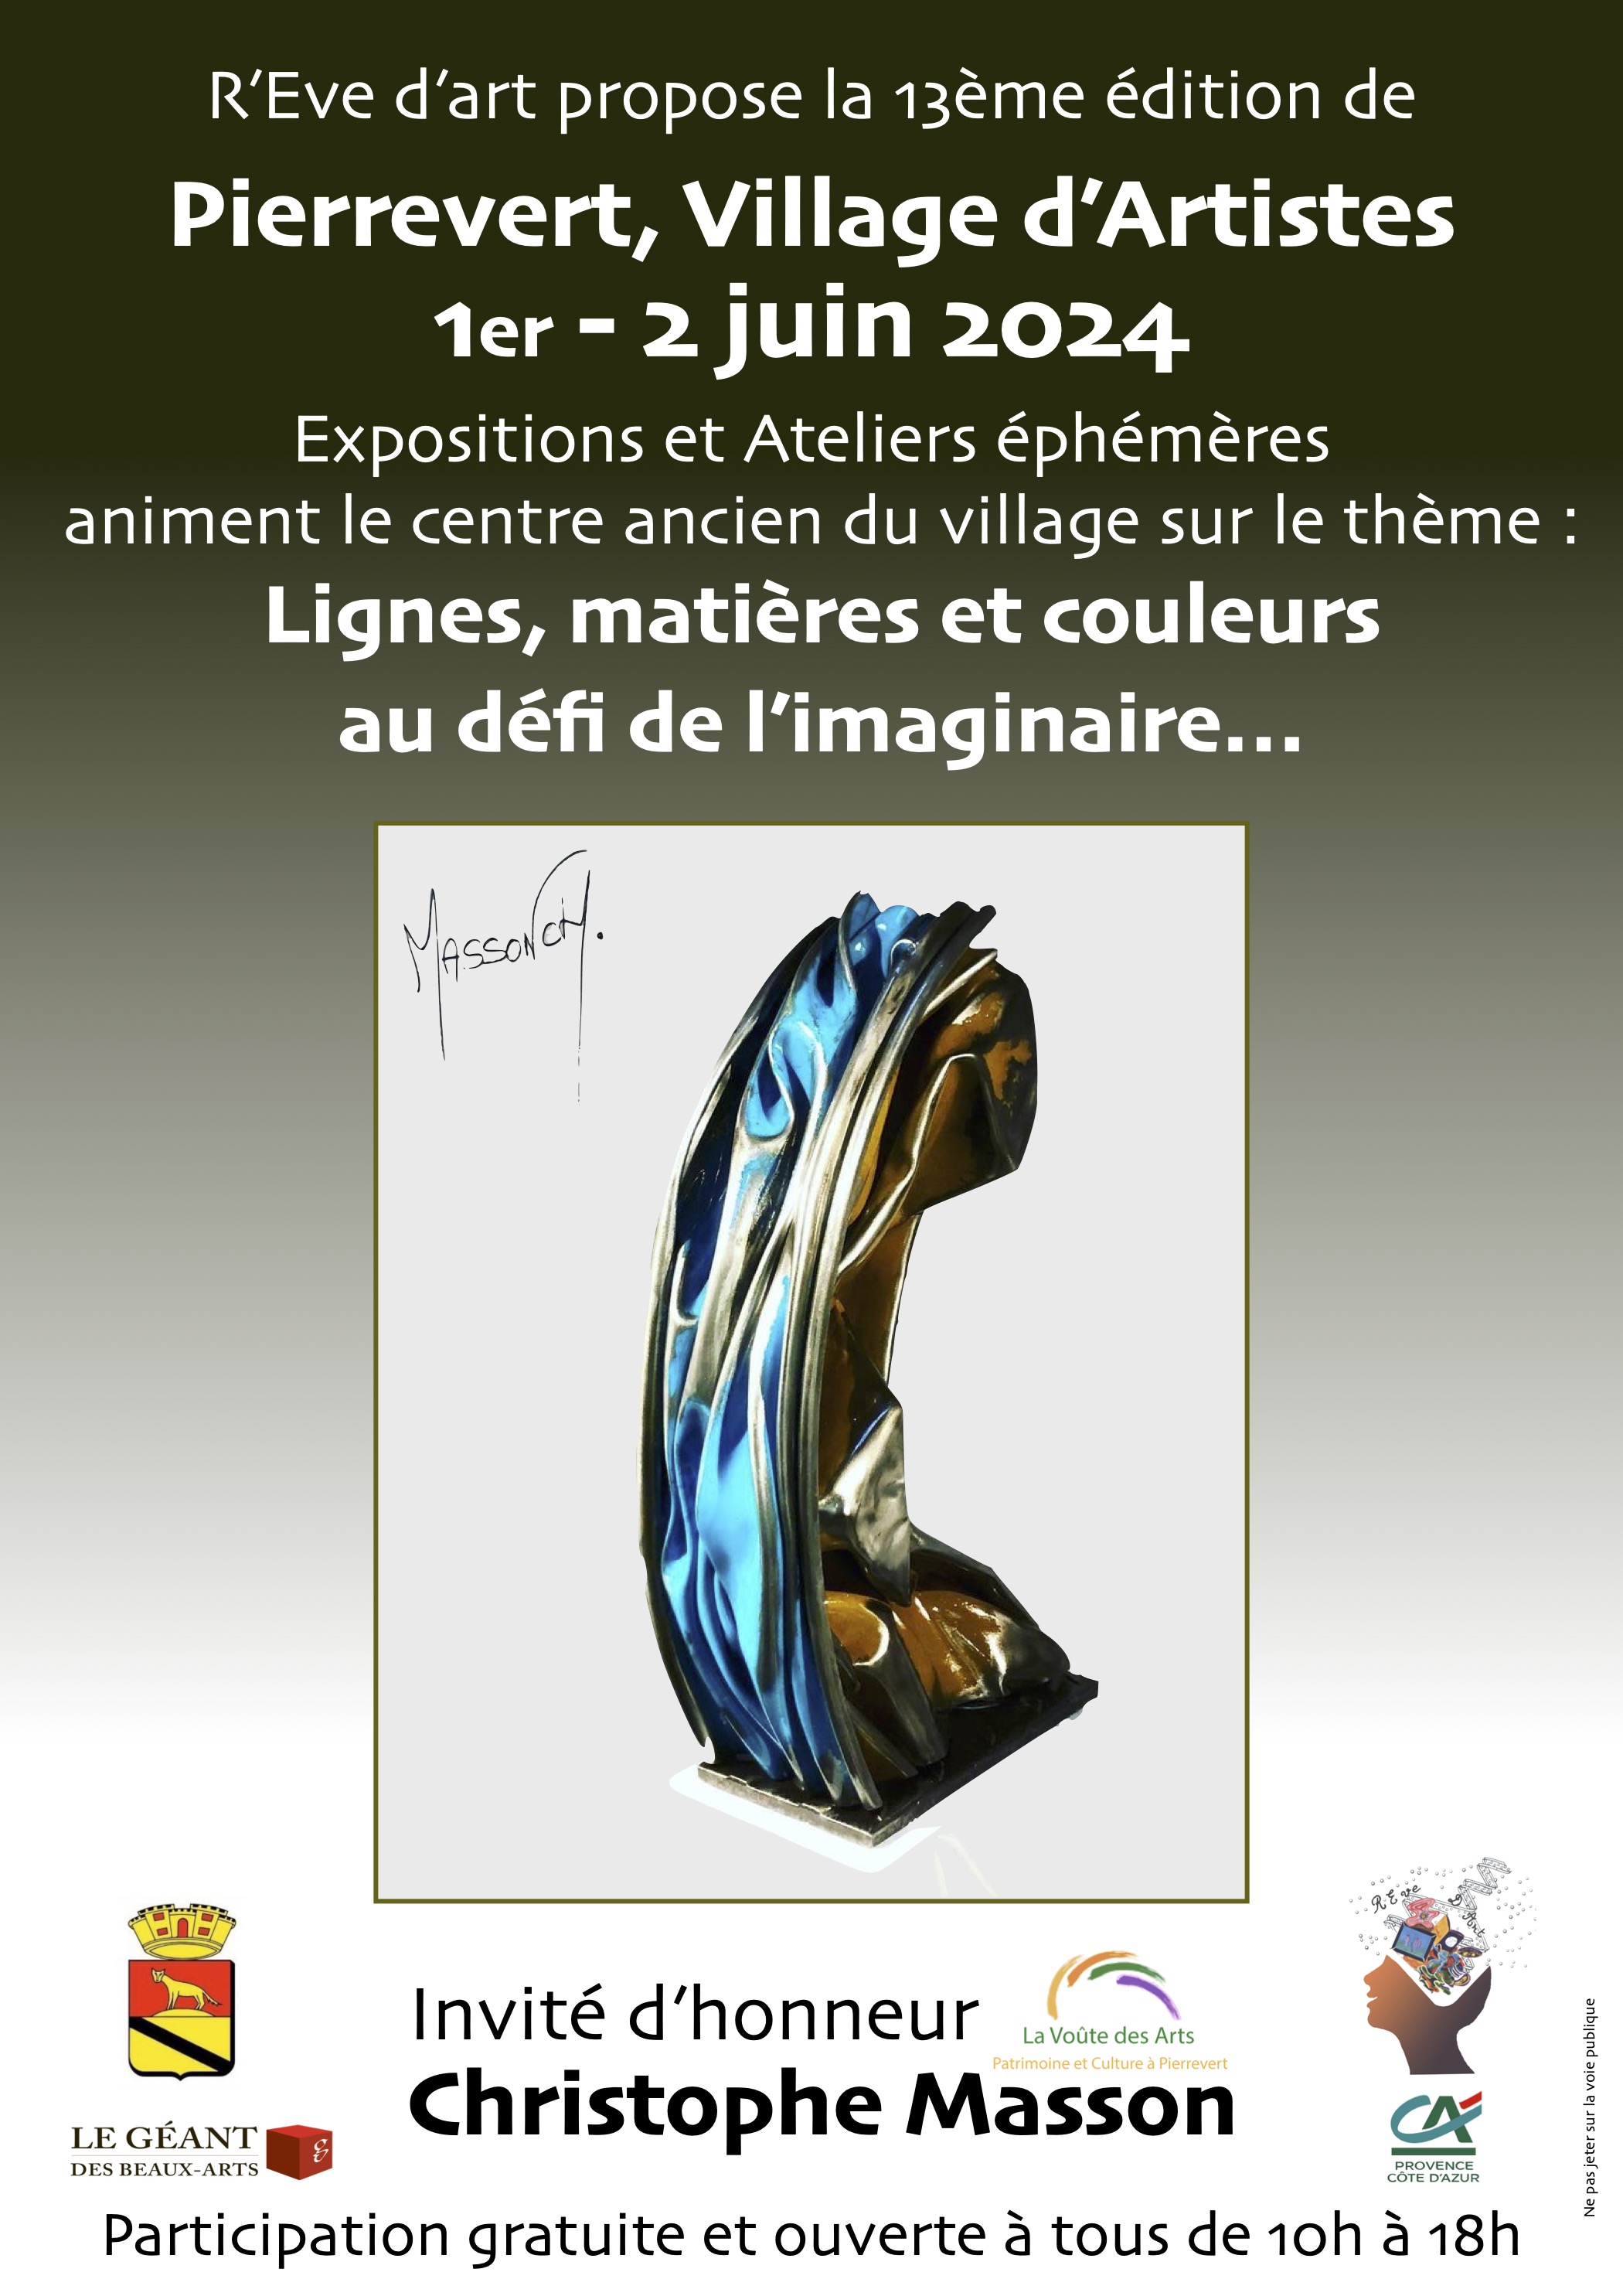 Expo et ateliers éphémères d' arts plastiques: Pierrevert Village d'artistes